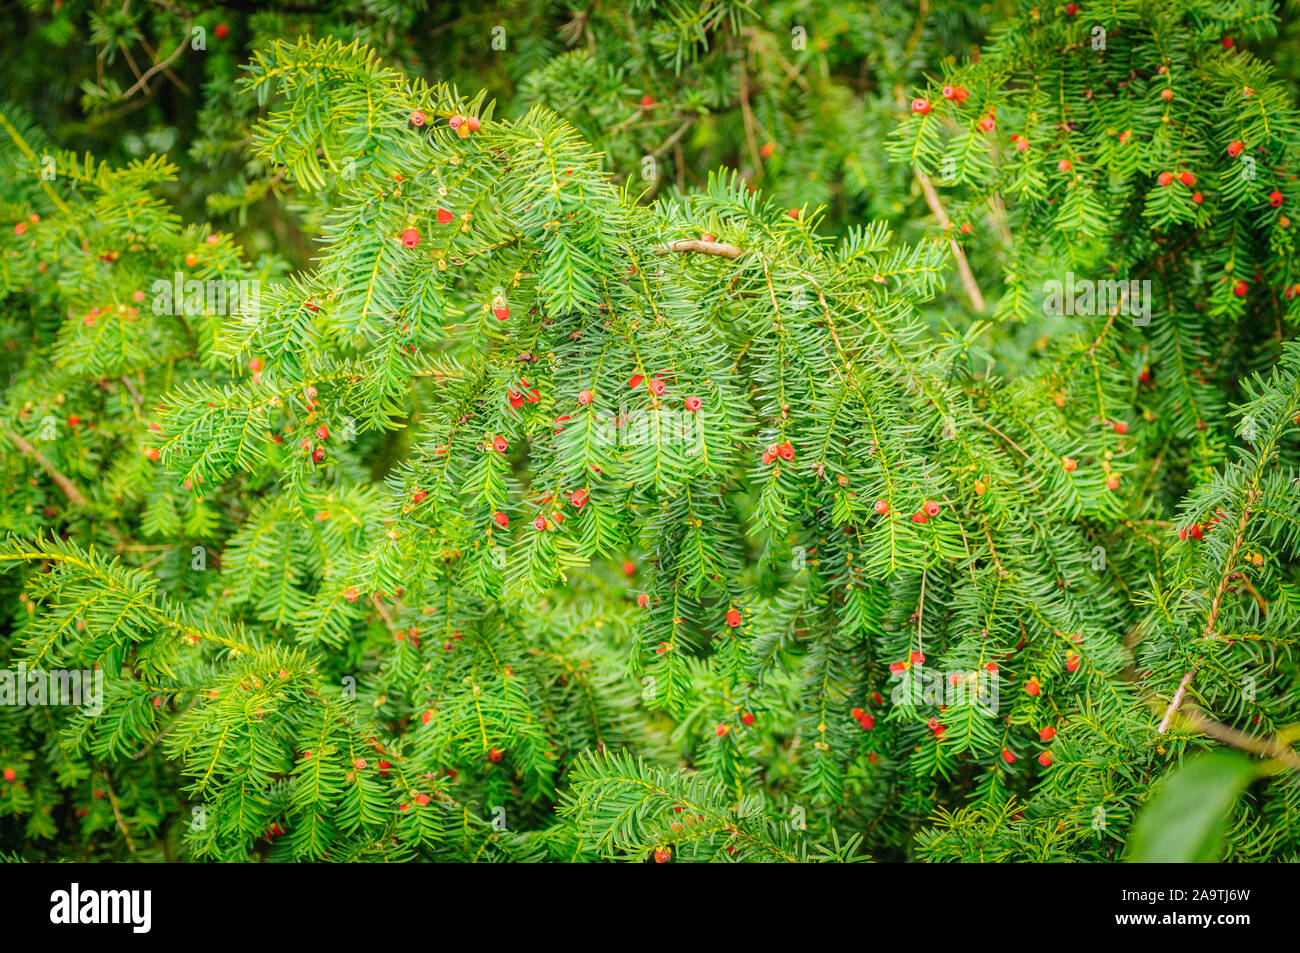 Unione yew Taxus baccata è un nativo di conifere in Europa occidentale, Europa centrale e meridionale, Africa nord-occidentale, Iran settentrionale e Asia sud-ovest. Berrie rosso Foto Stock